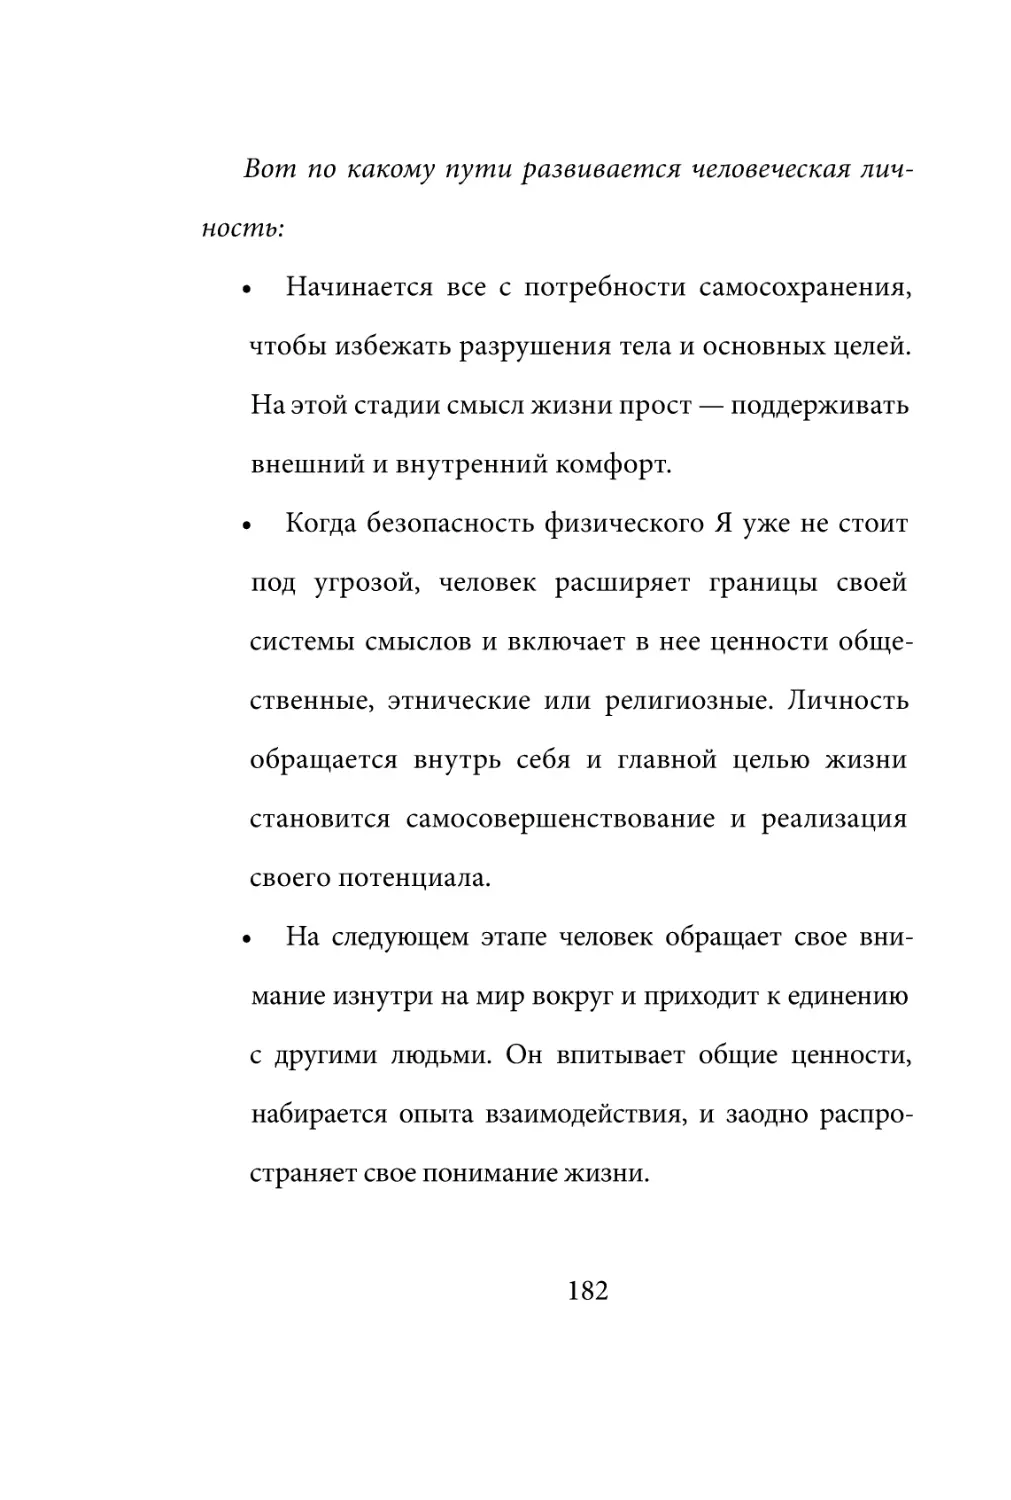 Sergey_Filippov_Dnevnik_samorazvitia_Evolyutsia_Vnutrennego_Sostoyania_182.pdf (p.182)